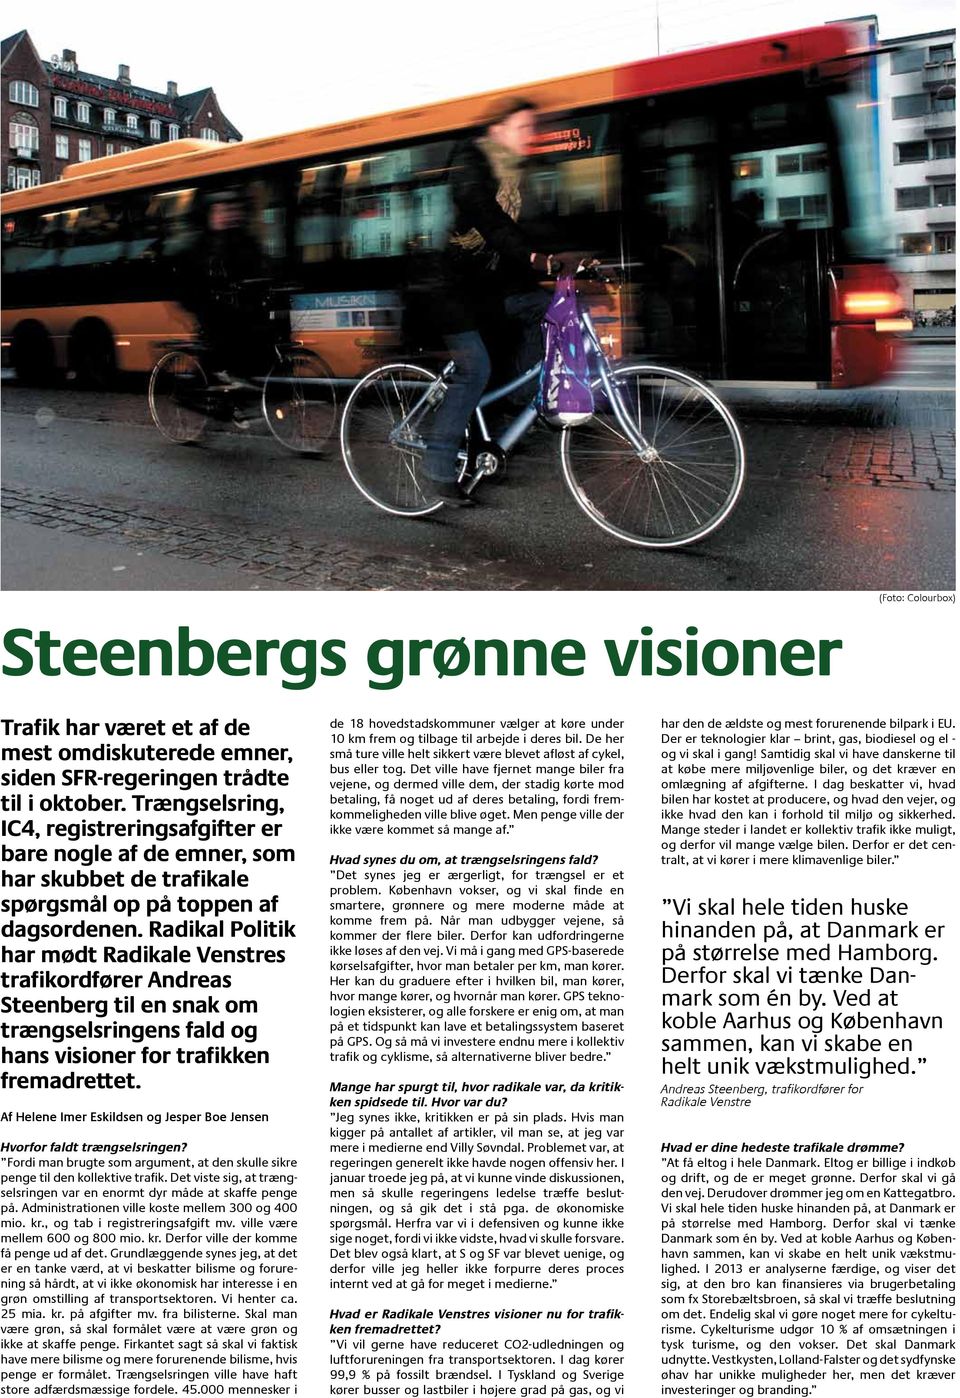 Radikal Politik har mødt Radikale Venstres trafikordfører Andreas Steenberg til en snak om trængselsringens fald og hans visioner for trafikken fremadrettet.